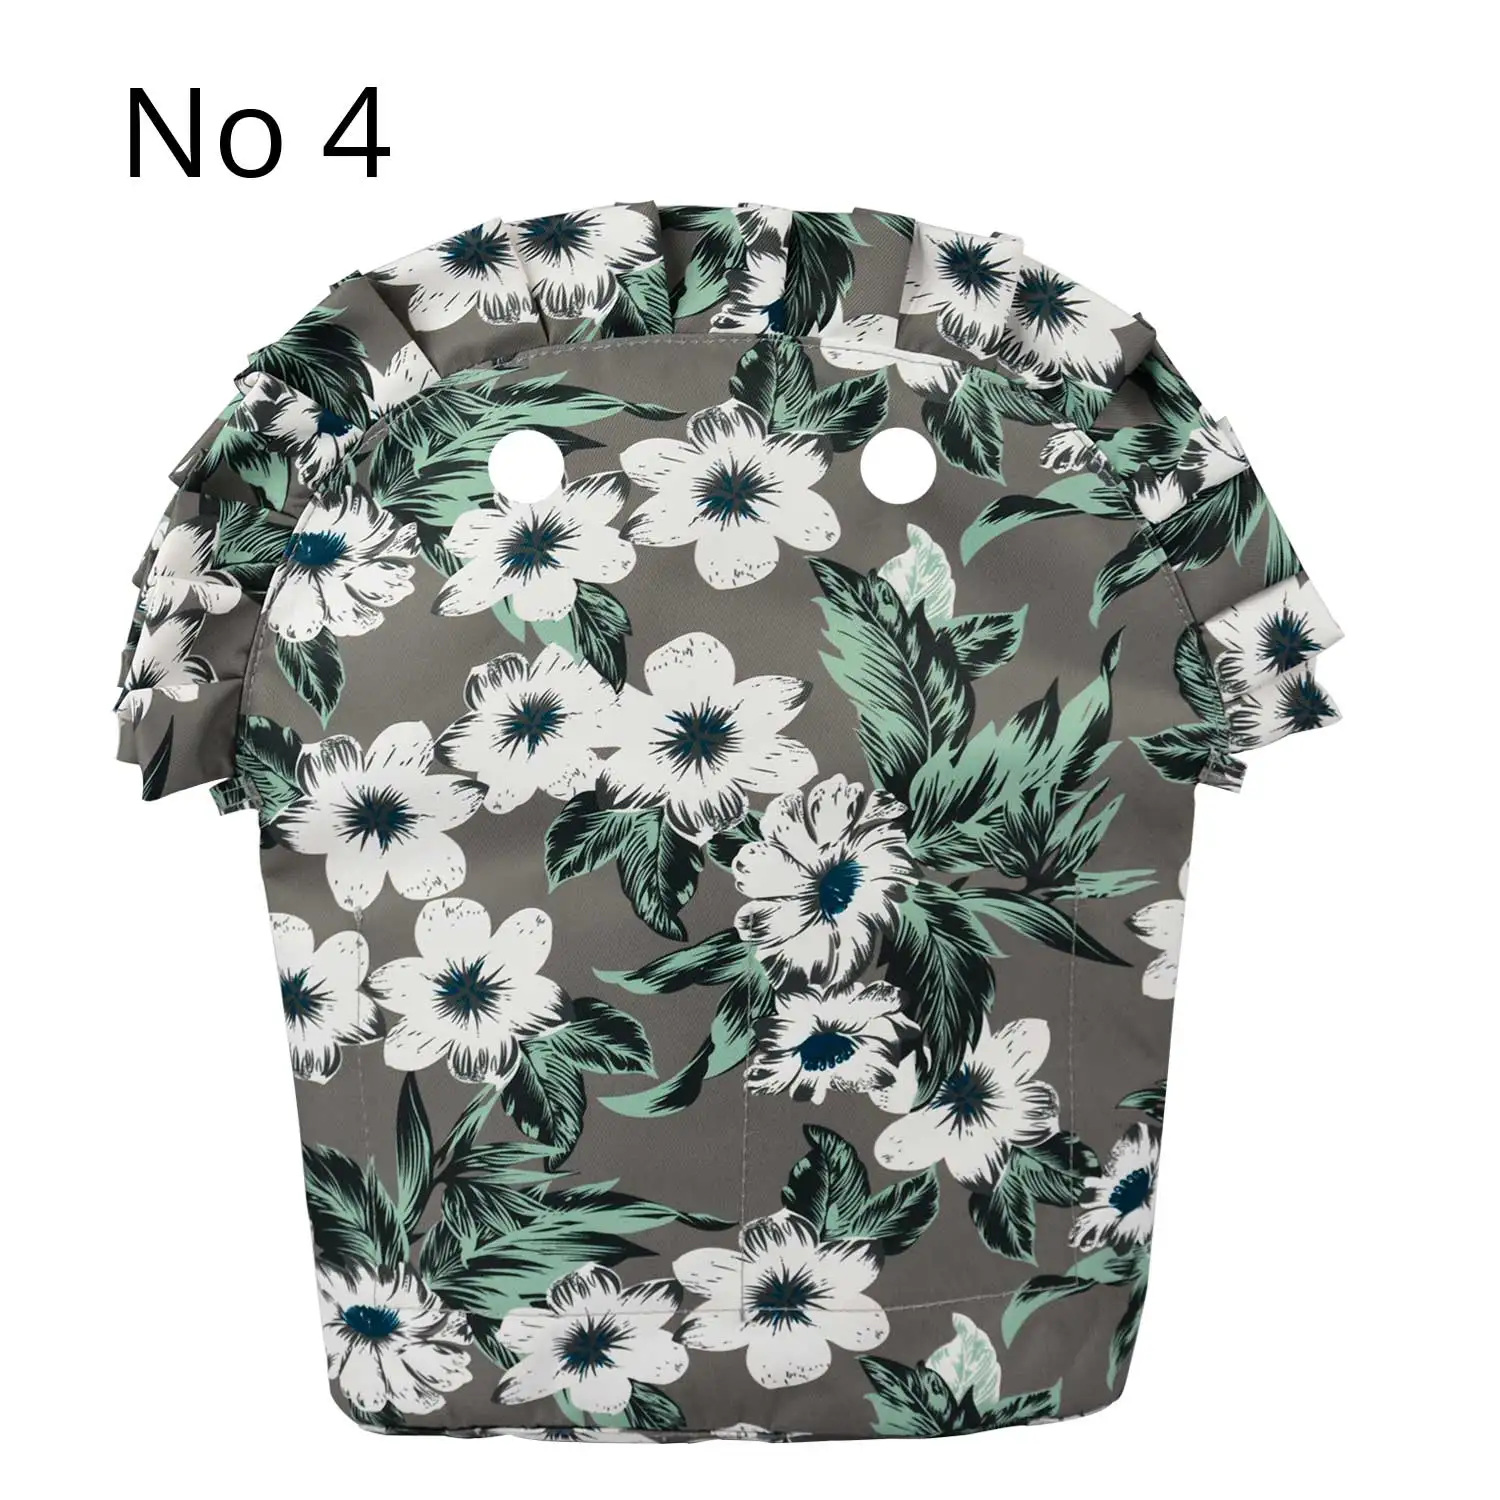 TANQU цветочный оборка складка подкладка карман на молнии для Obag 50 композитная ткань вставка с внутренним водонепроницаемым покрытием для O сумка 50 - Цвет: No 4